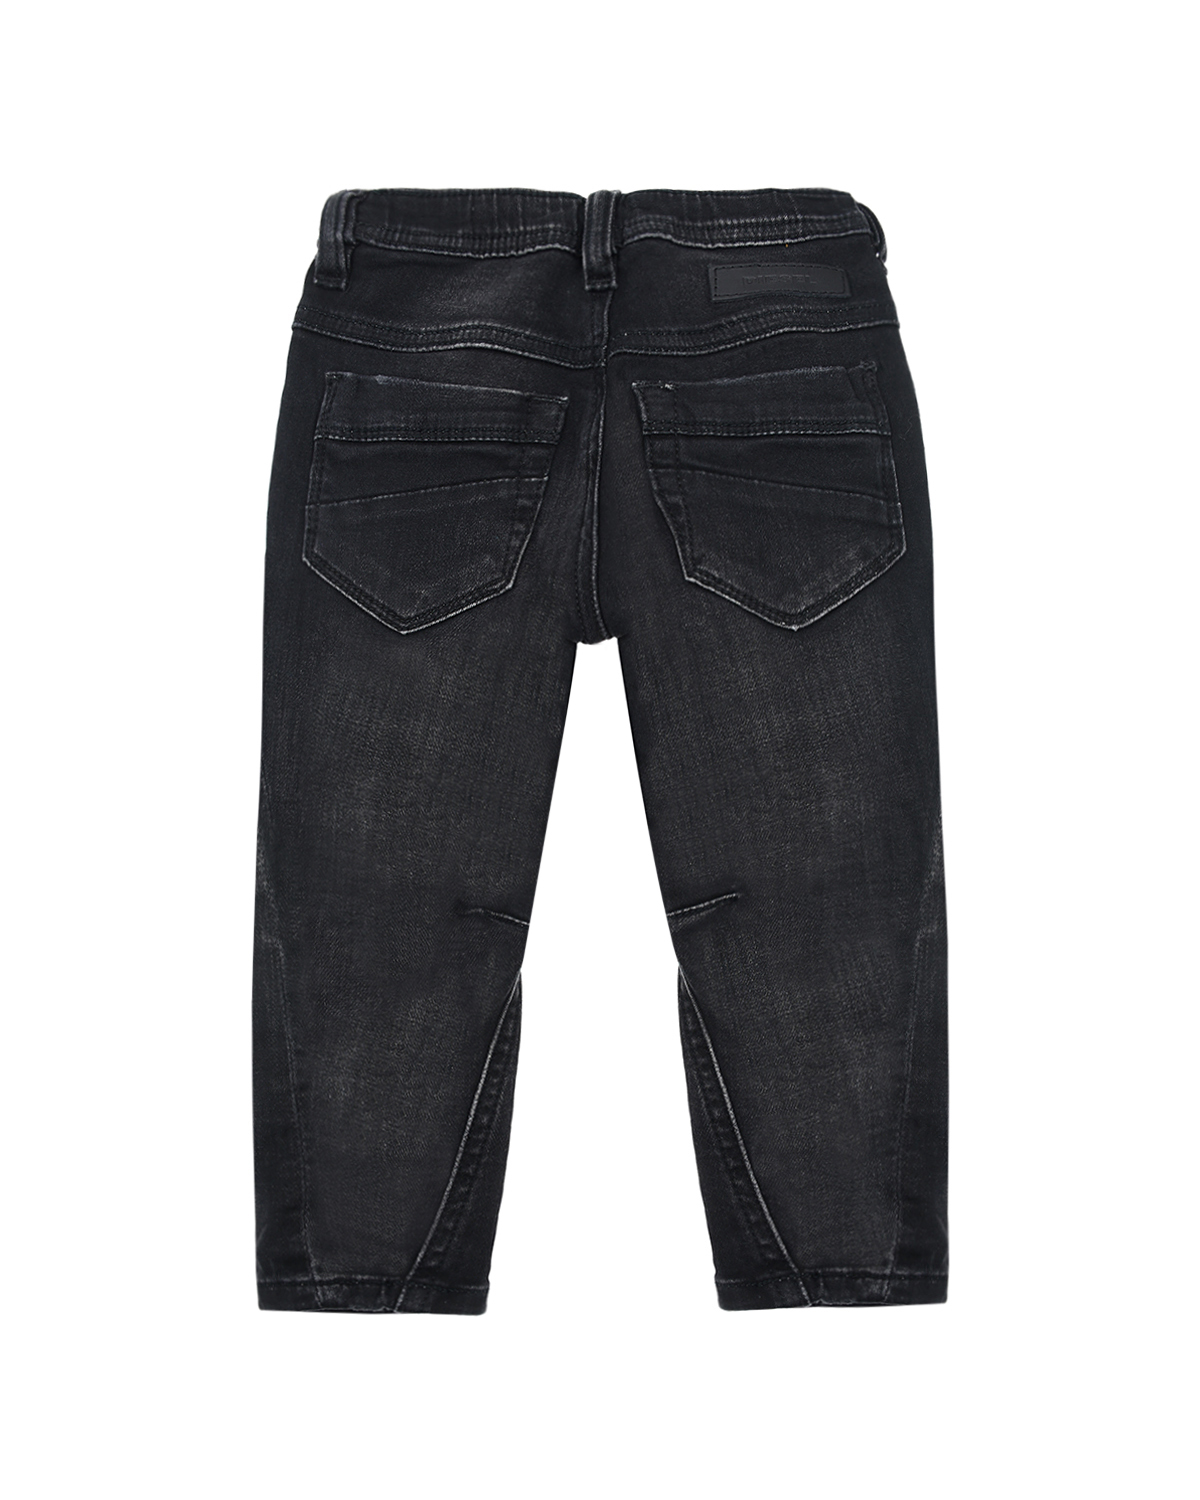 Потертые джинсы с поясом на резинке Diesel детские, размер 86, цвет серый - фото 2